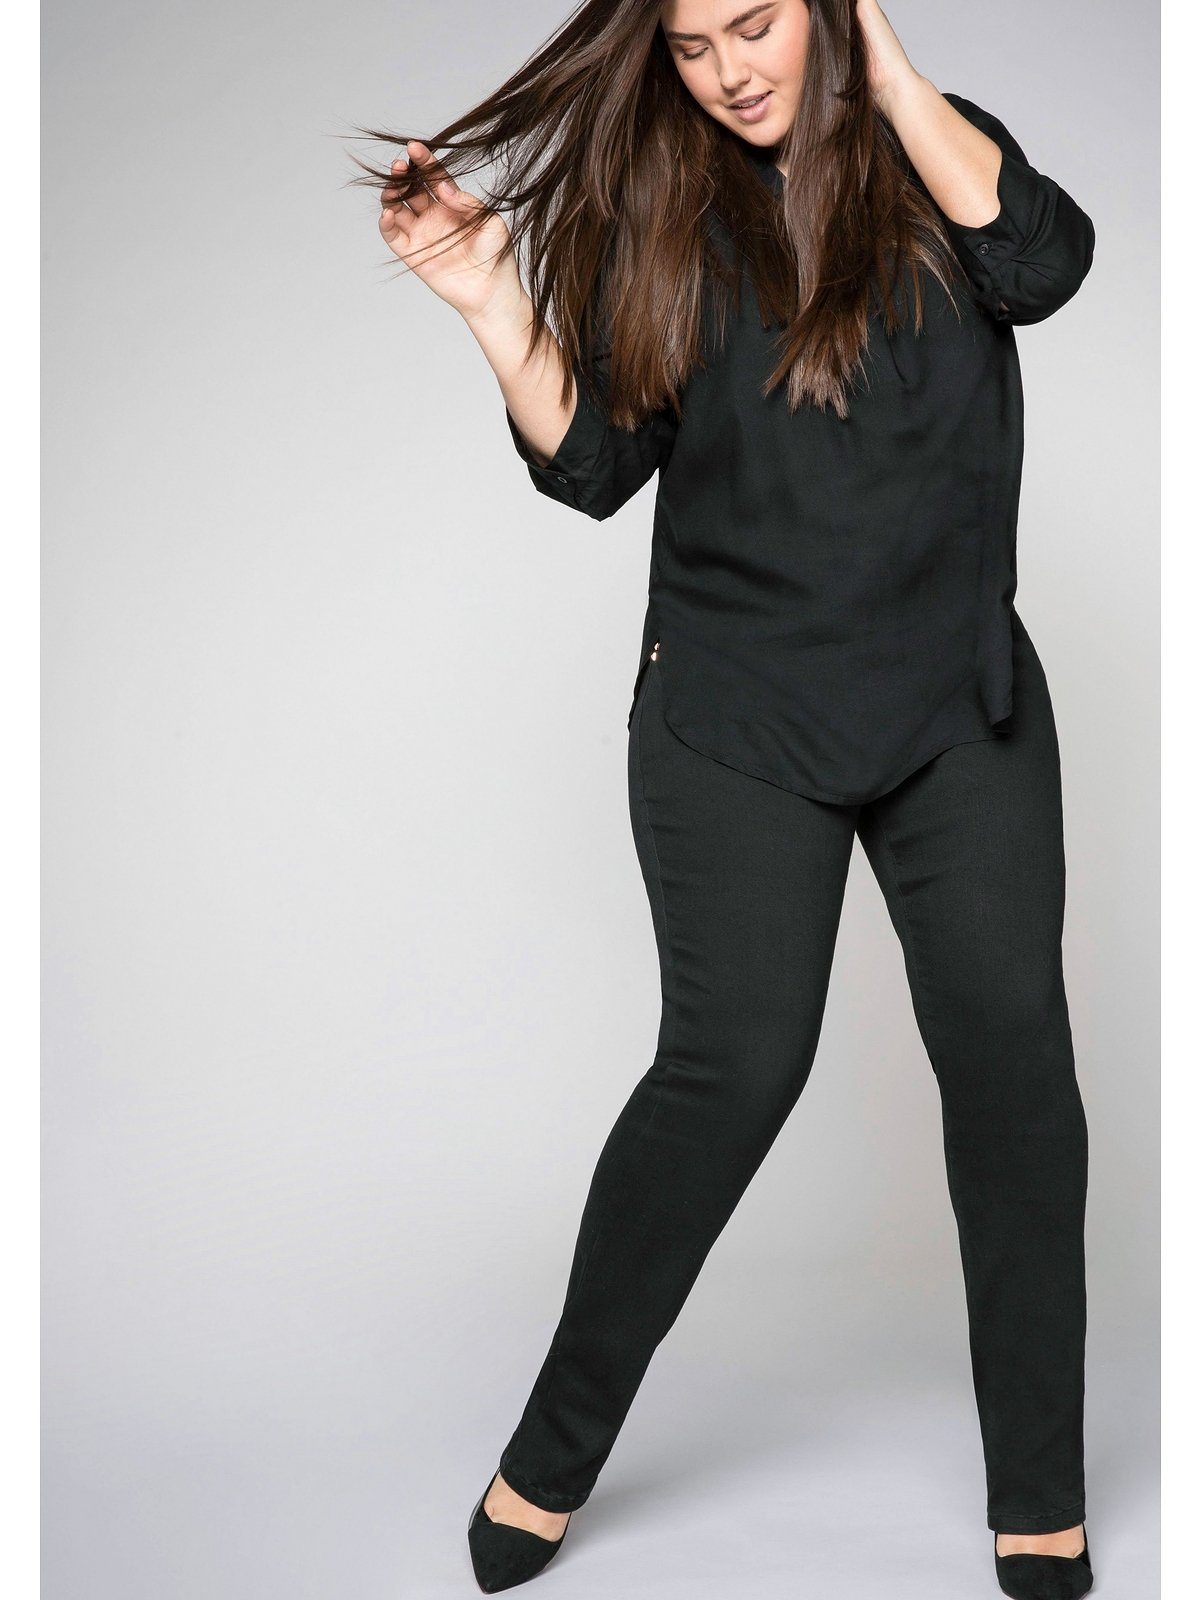 Top-Website Denim black Größen Bodyforming-Effekt Gerade Große Sheego Jeans mit